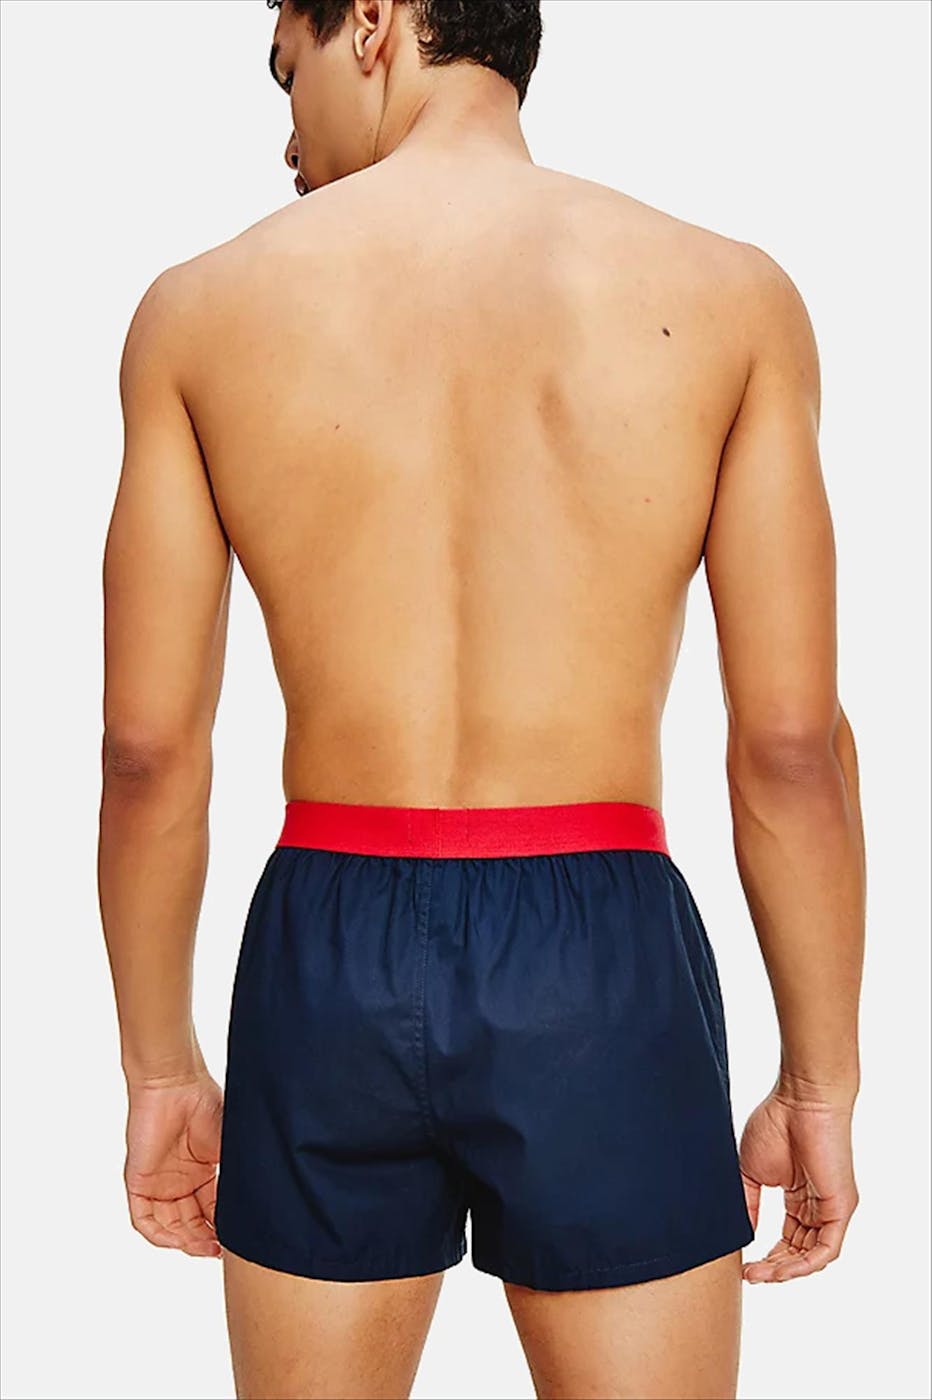 Tommy Hilfiger Underwear - Donkerblauw-rode Woven Boxershort